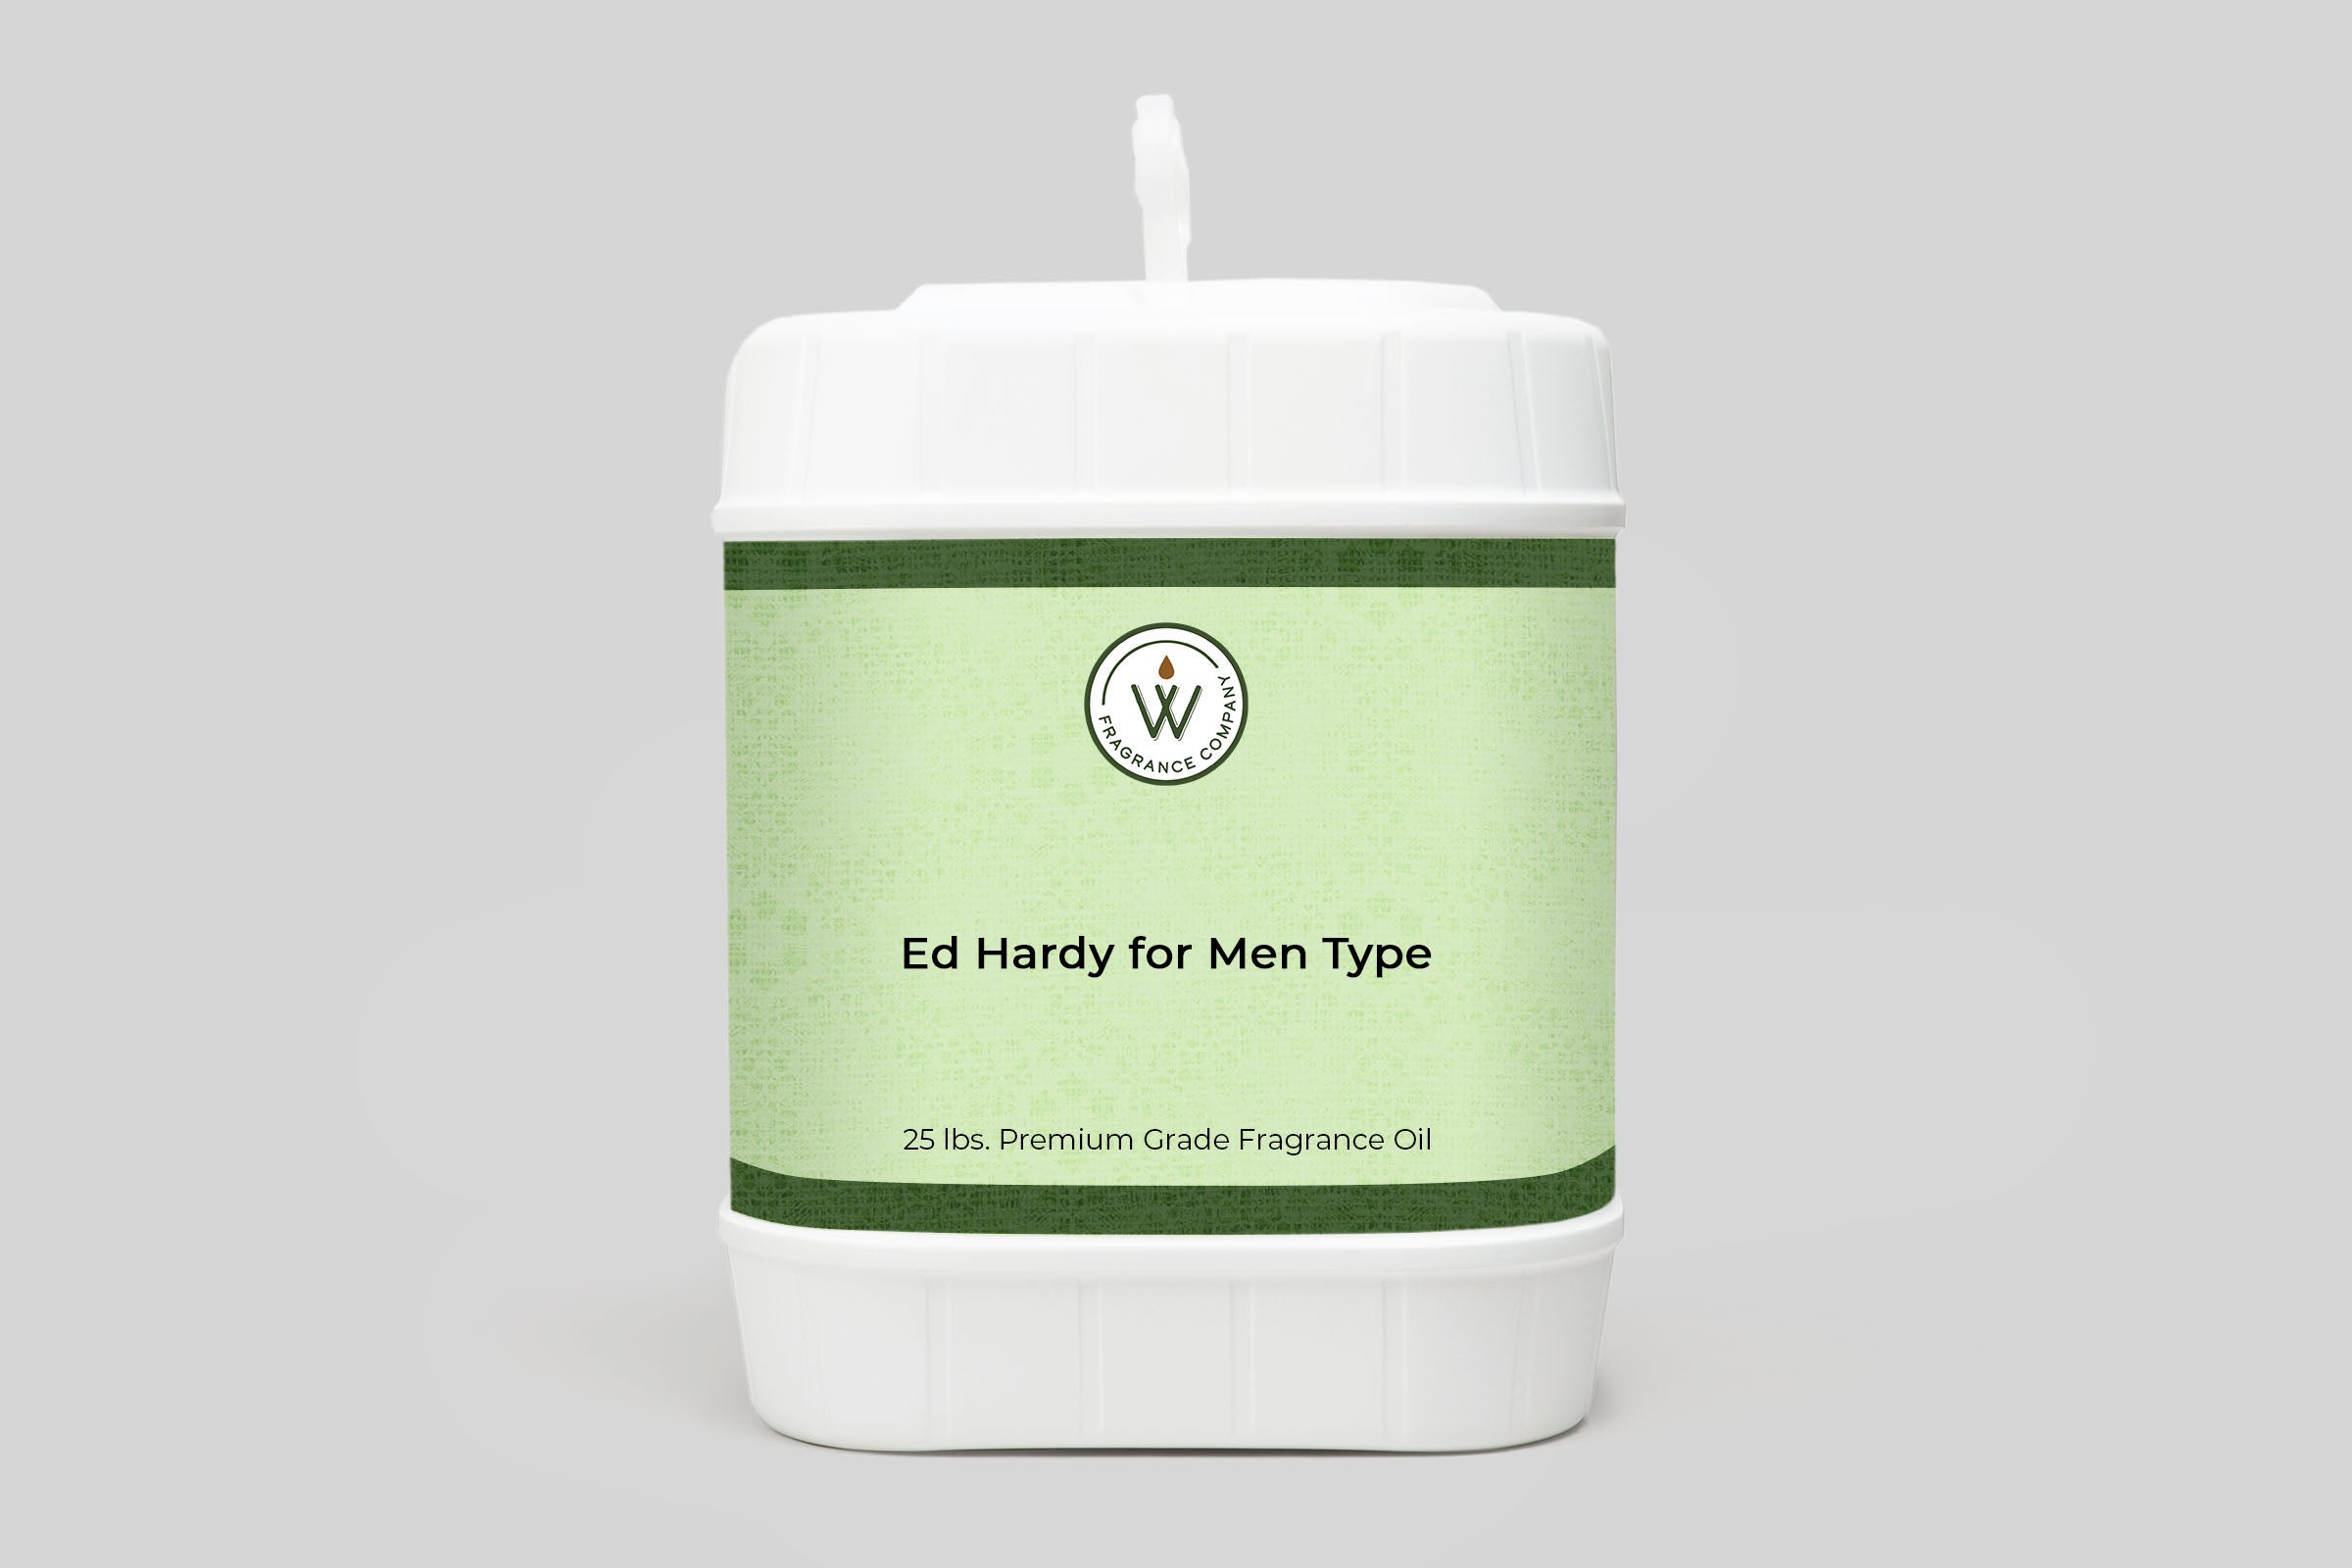 Ed Hardy for Men Type Fragrance Oil